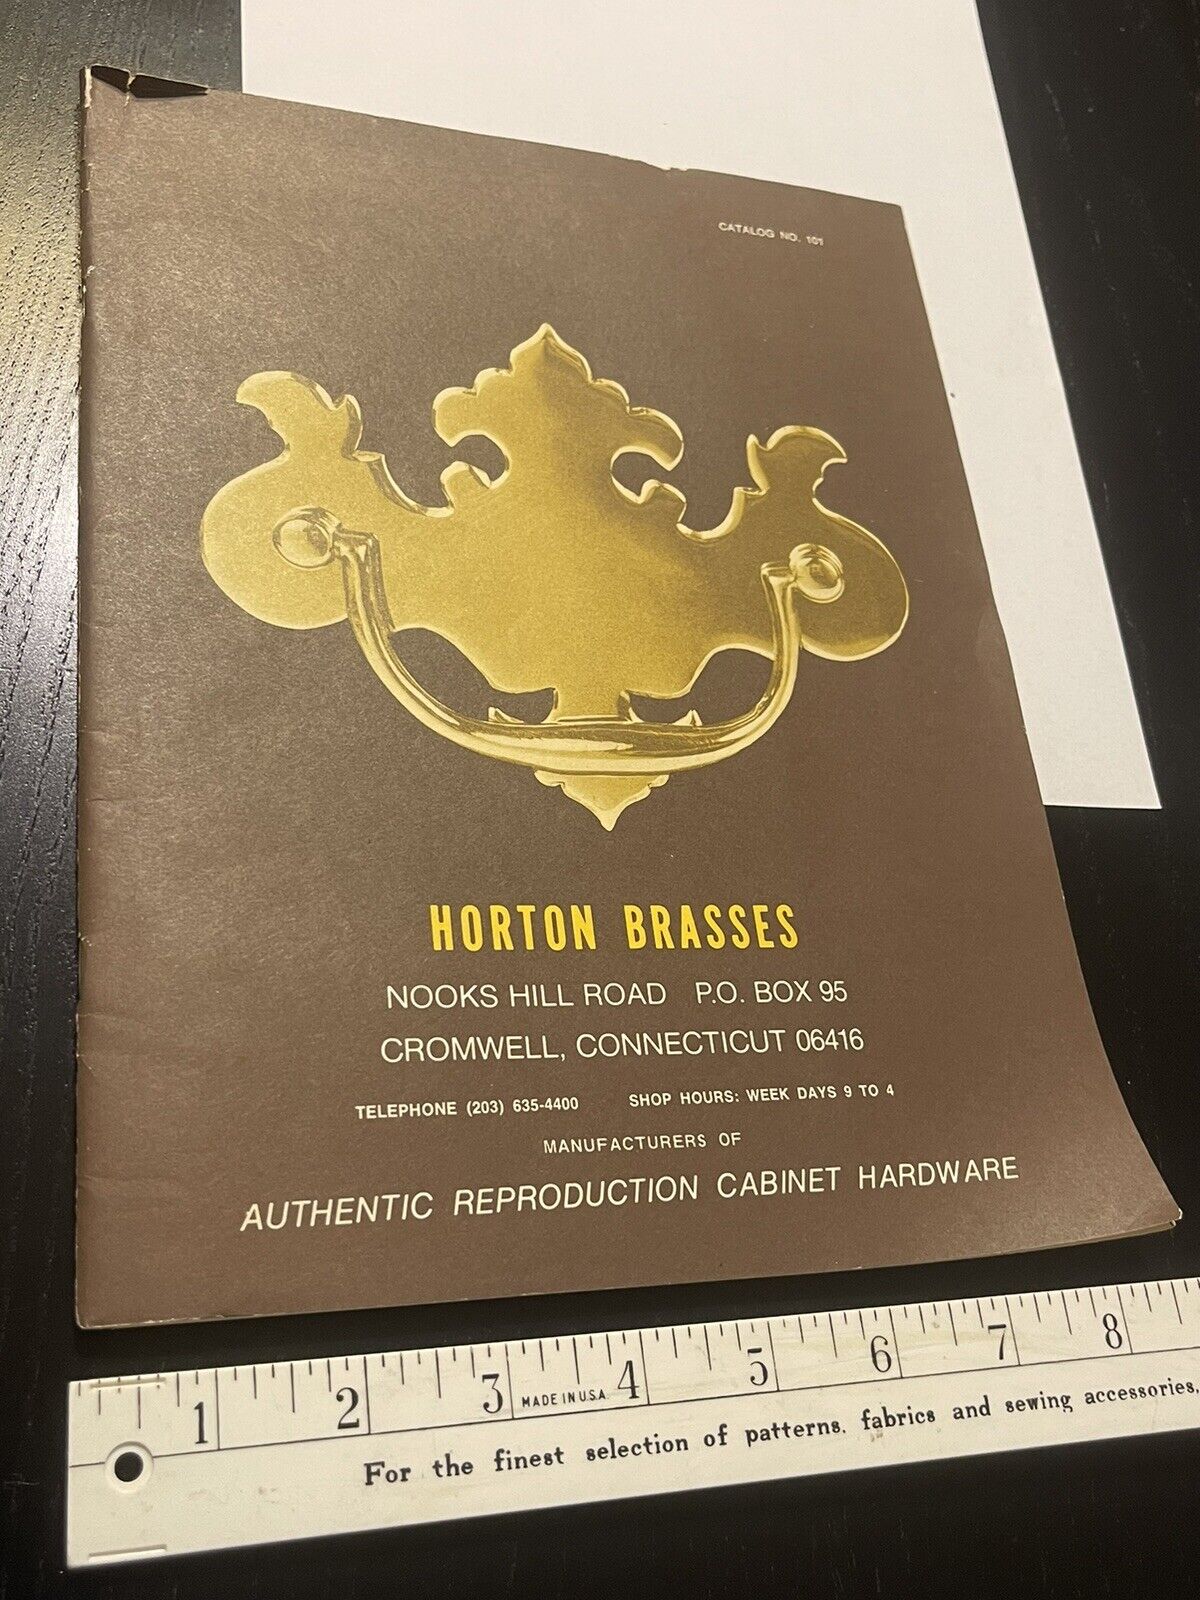 Horton Brasses Old Vintage Brass Cabinet Hardware Catalog 1980s Drawer Pulls…